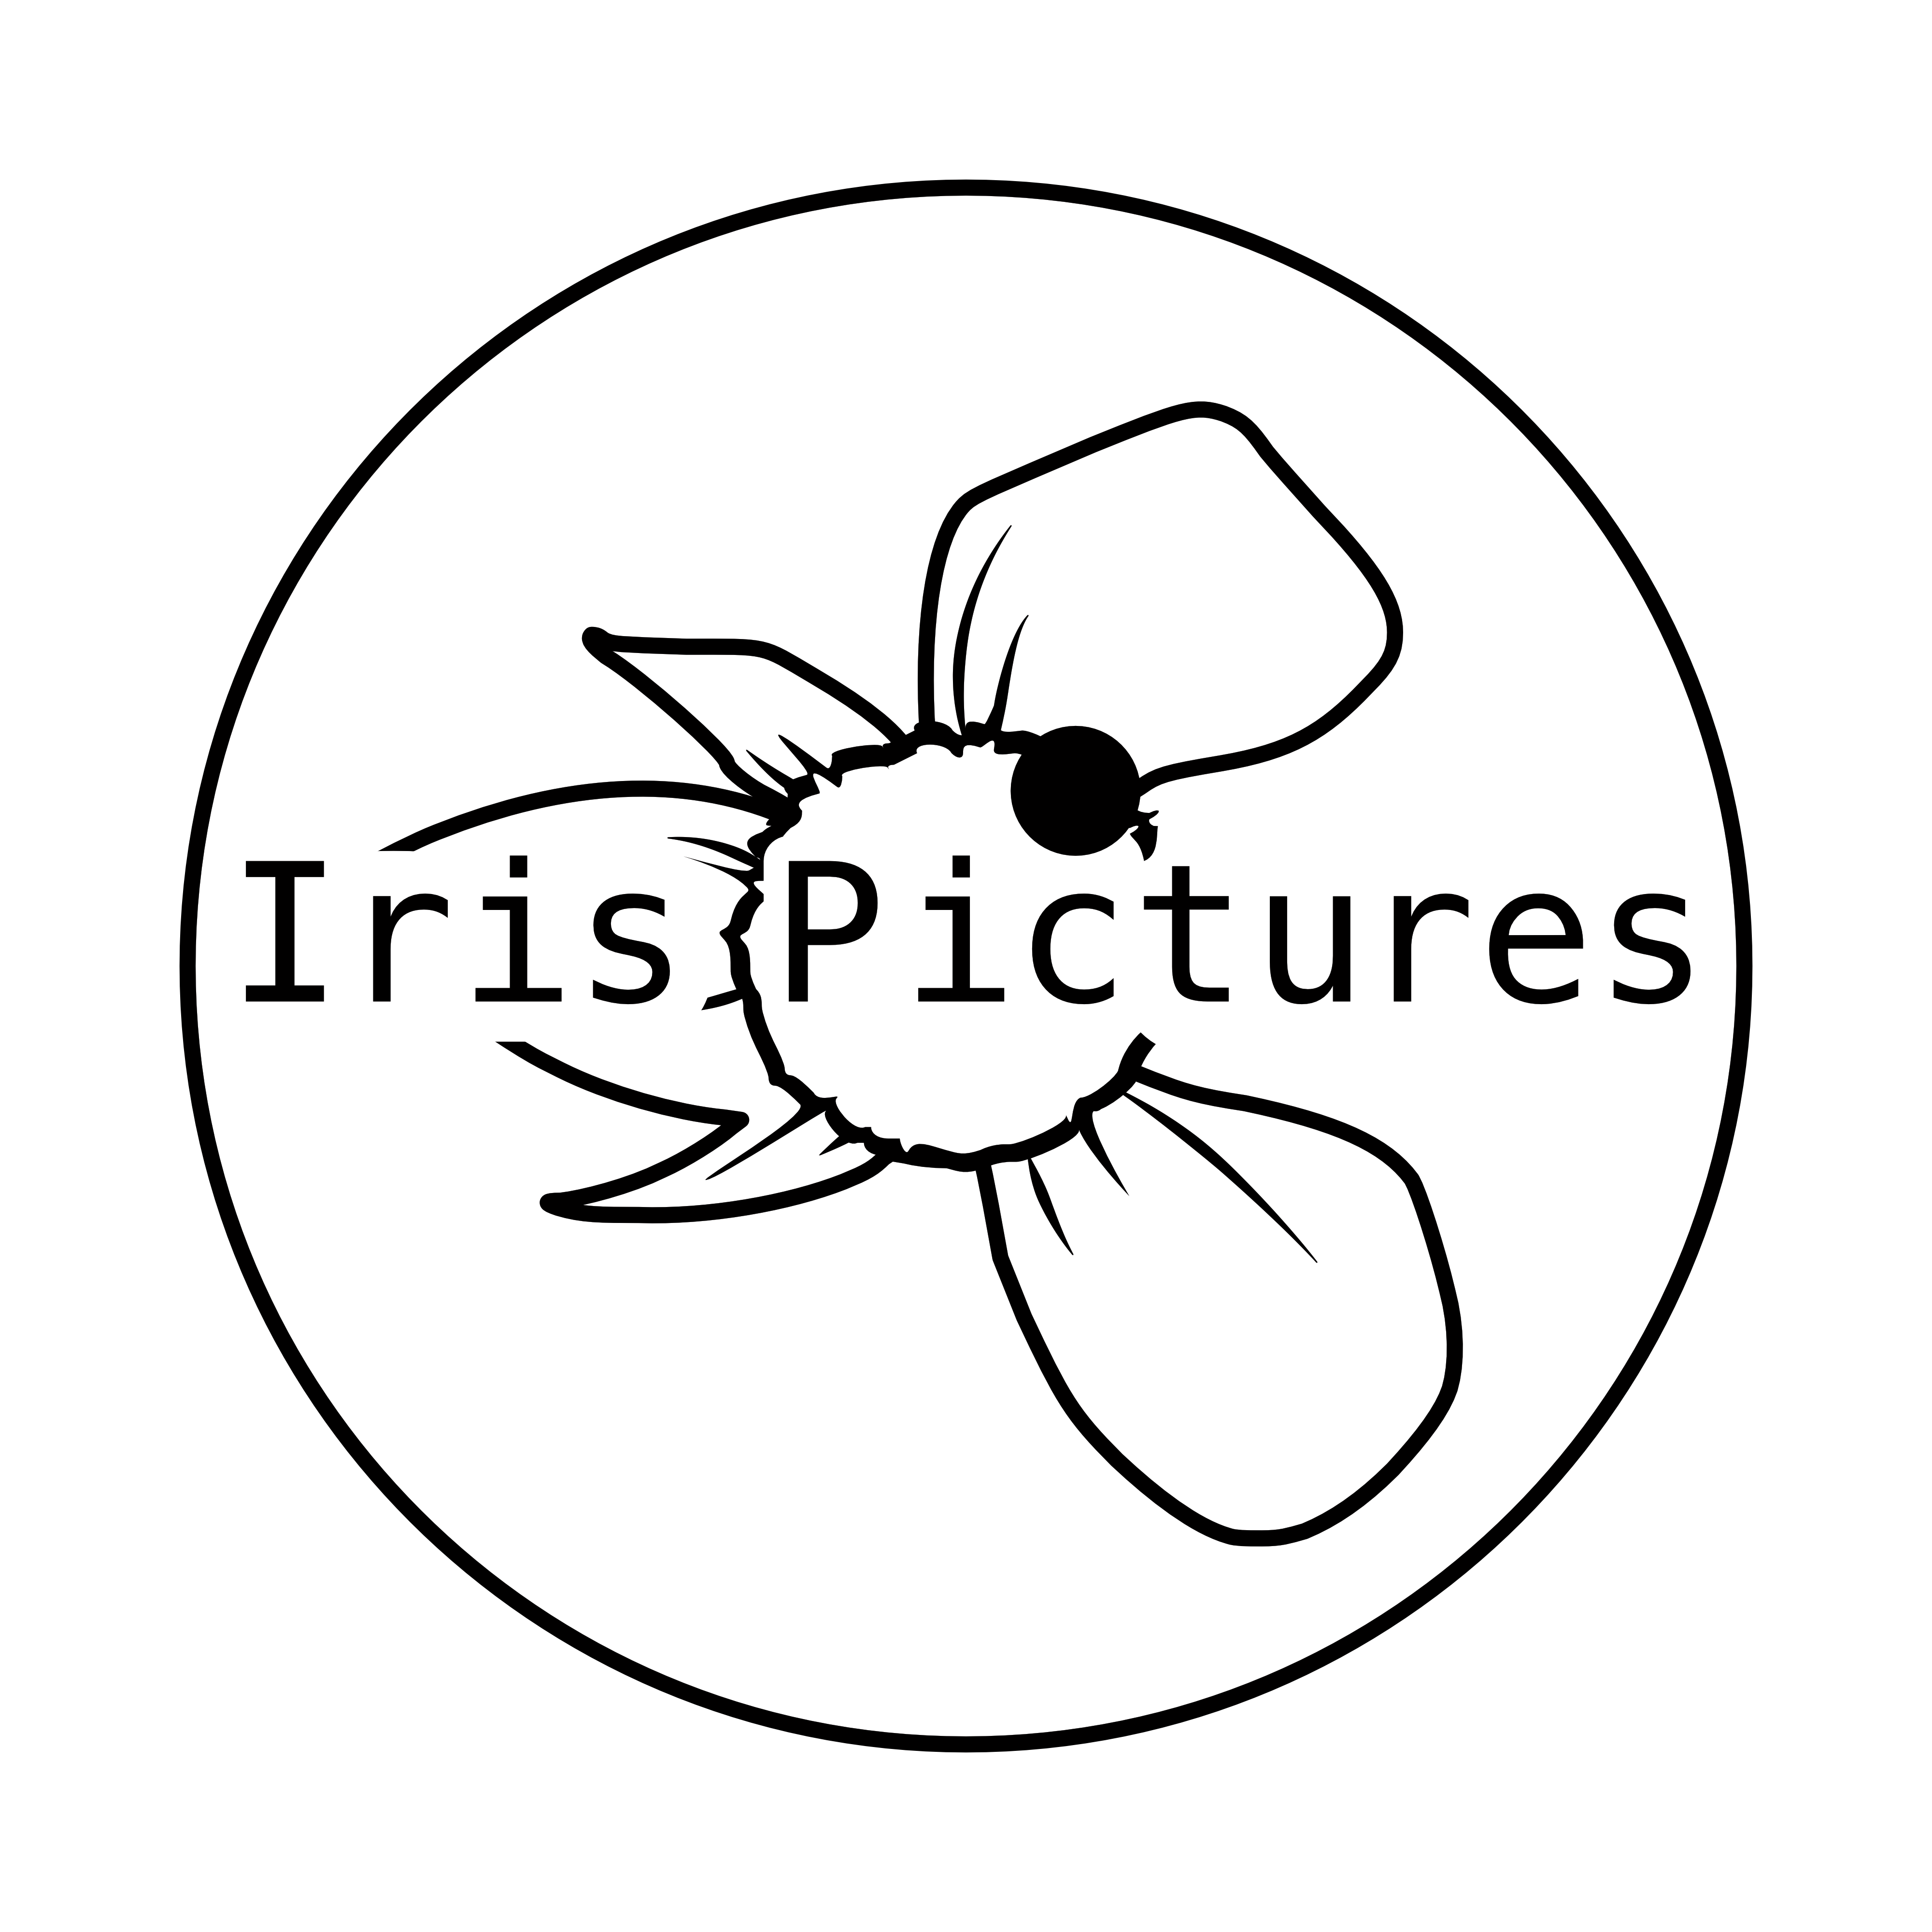 Iris Pictures